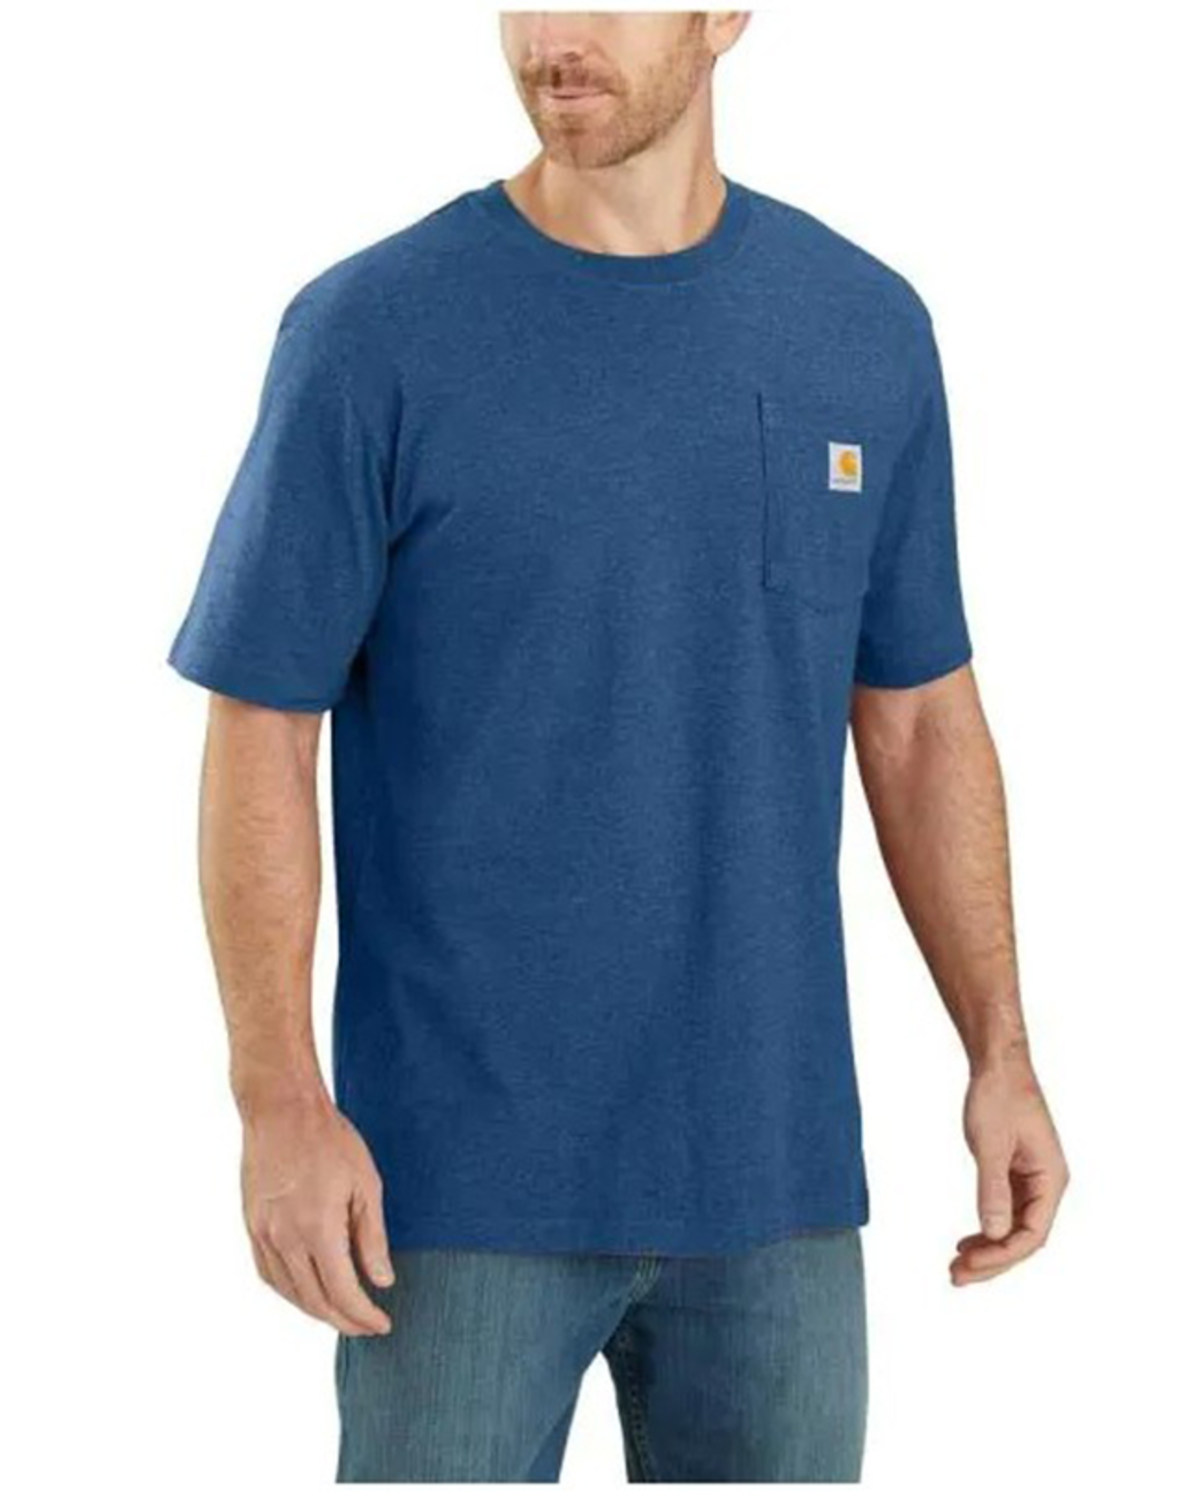 Carhartt Men's Loose Fit Heavyweight Logo Pocket Work T-Shirt